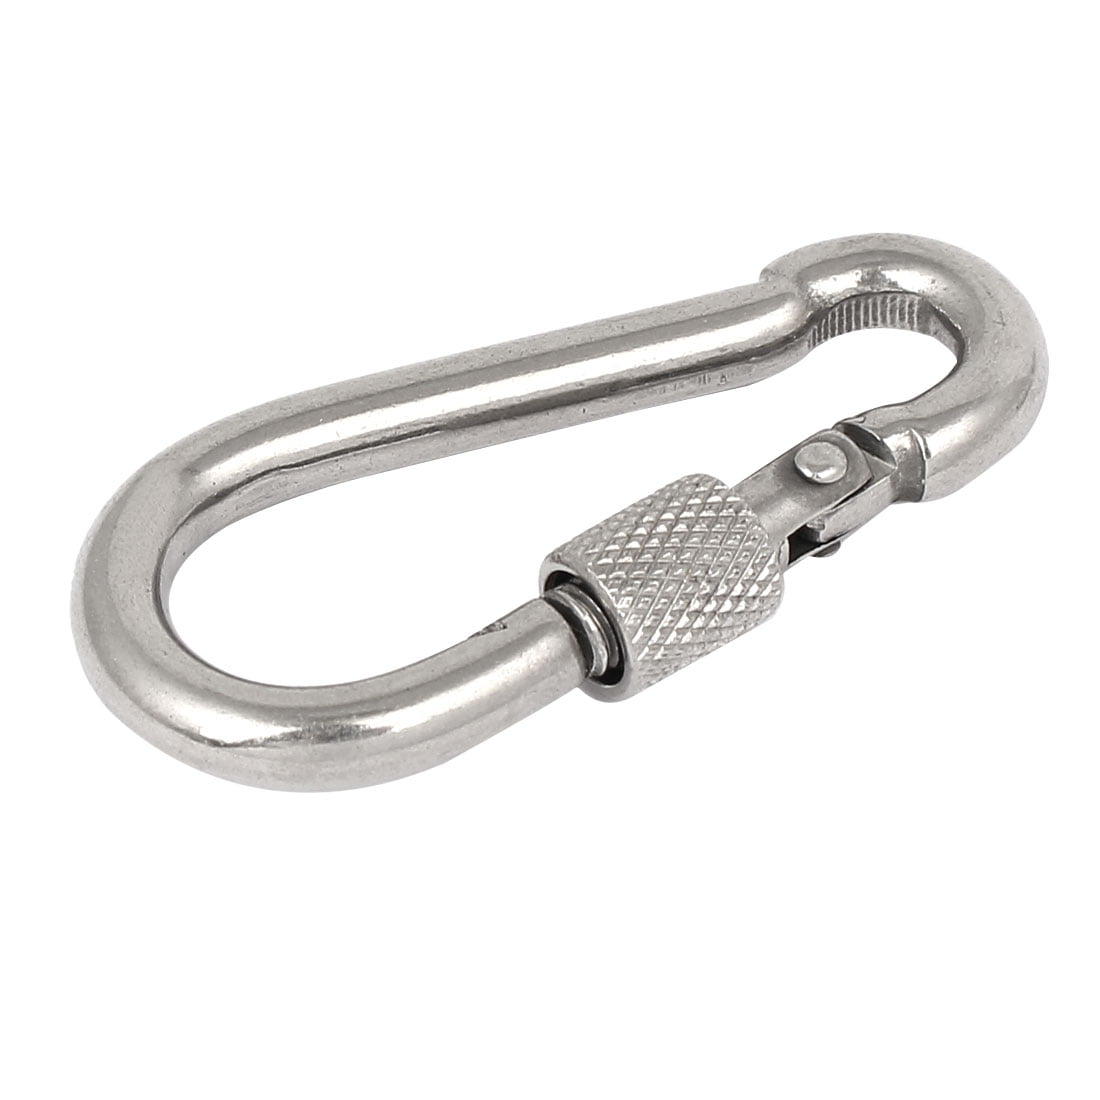 1 Snap Spring Clip Keyring Key Chain Belt Clip for Keys Jacket Bike Keyring 